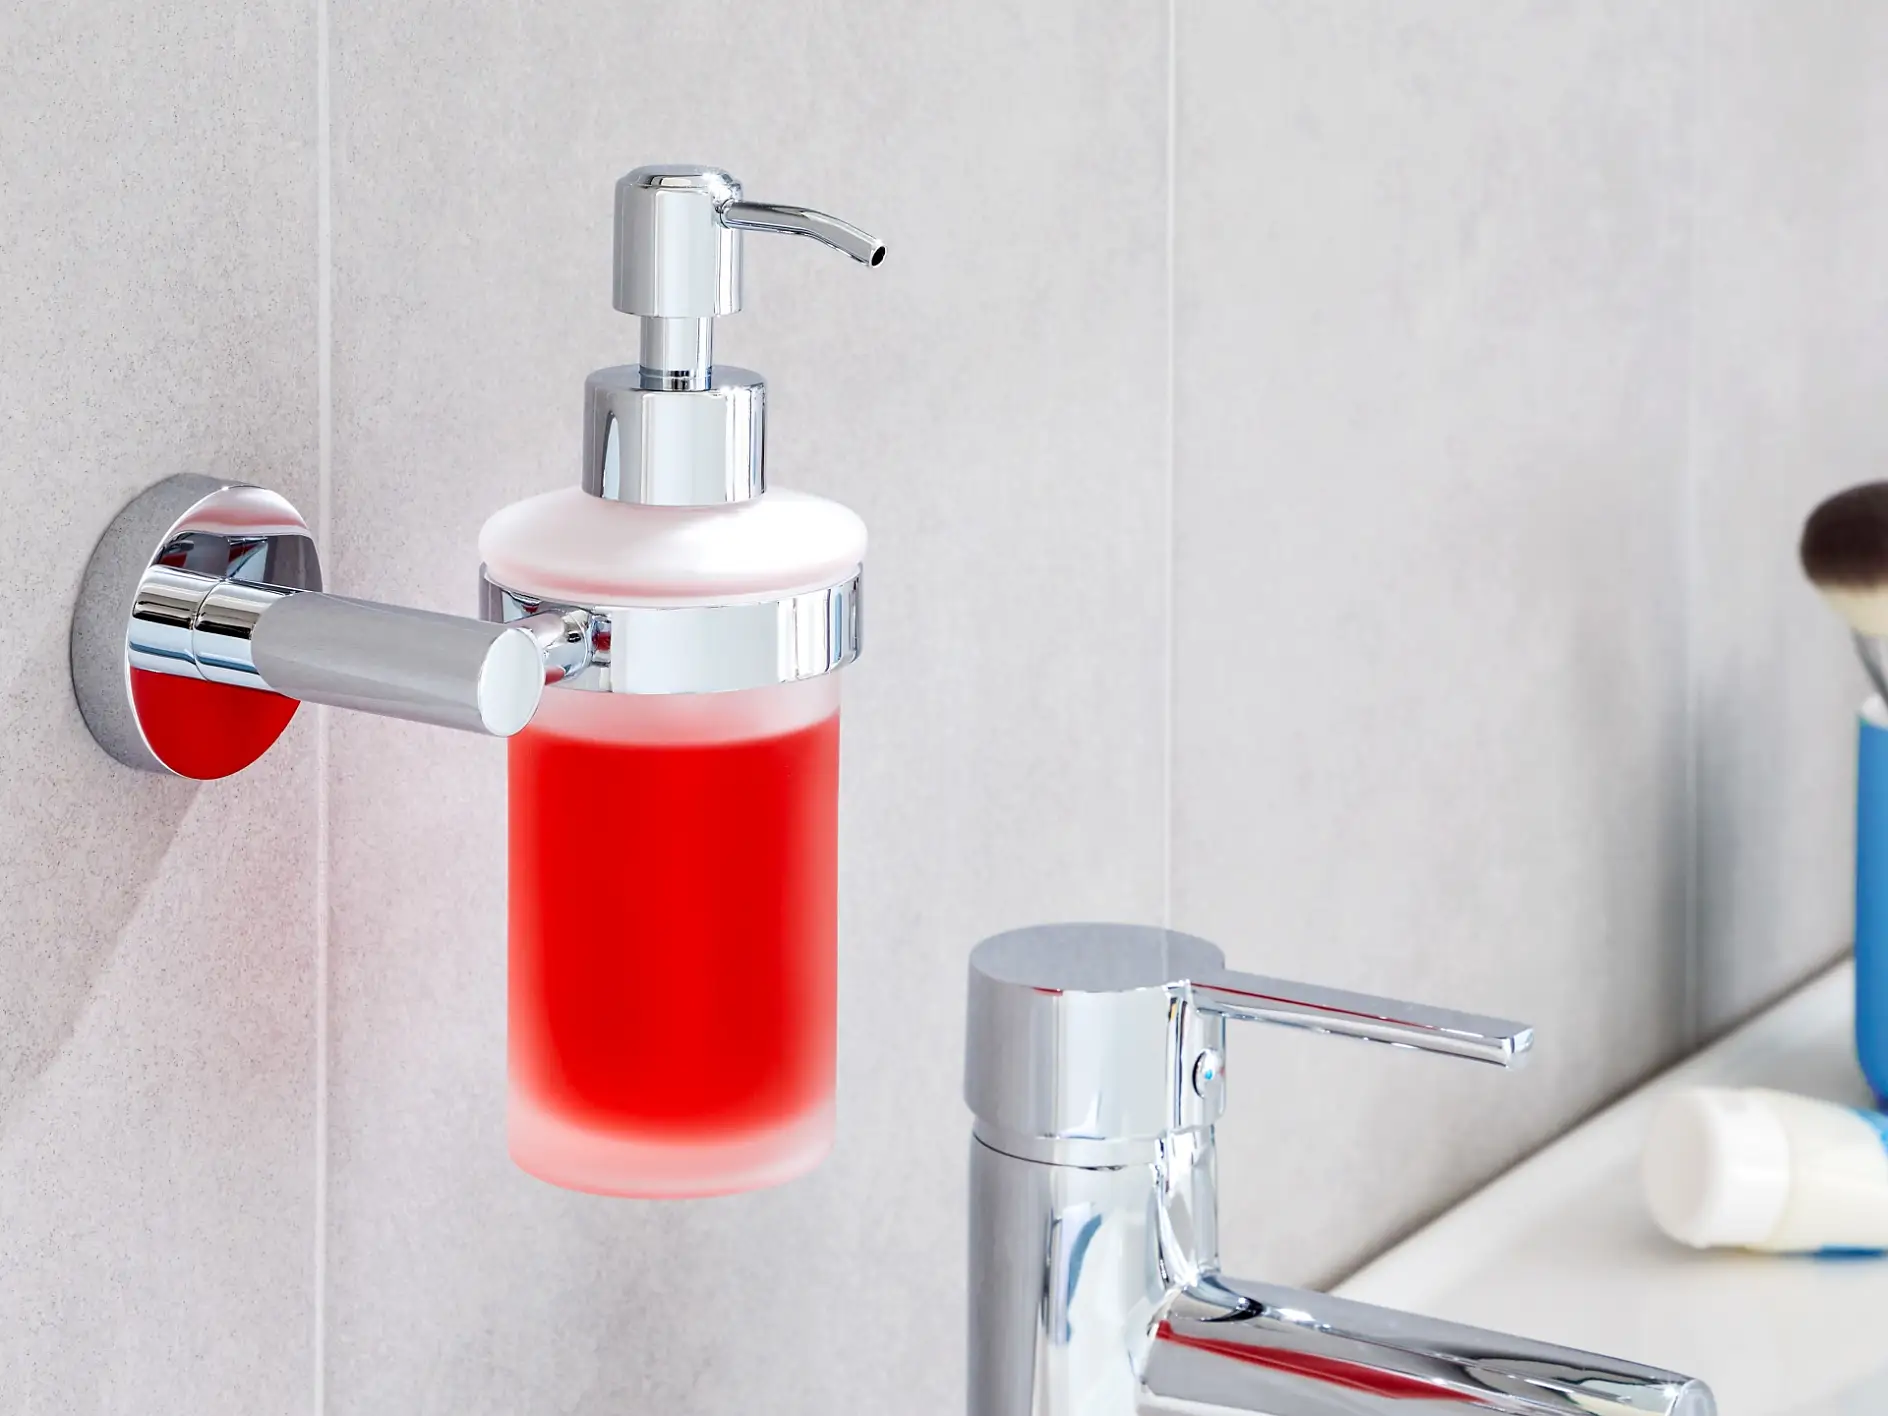 Aménagez votre salle de bains avec style en ajoutant des accessoires élégants qui donneront à vos affaires de toilettes la place qu’elles méritent.